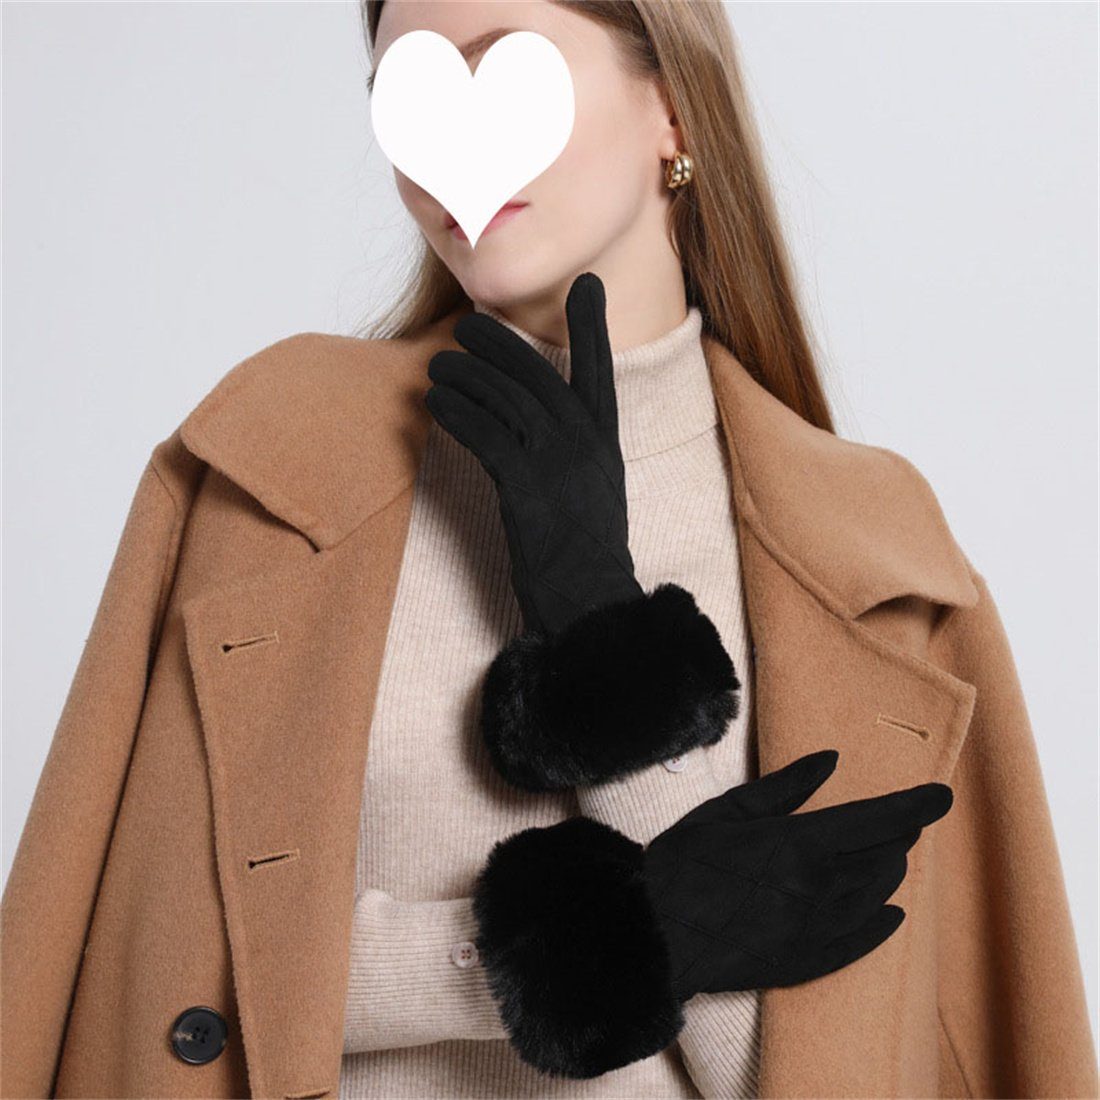 DÖRÖY Fleecehandschuhe Damen Kunstfell gepolsterte warme Handschuhe, Touchscreen Handschuhe Schwarz